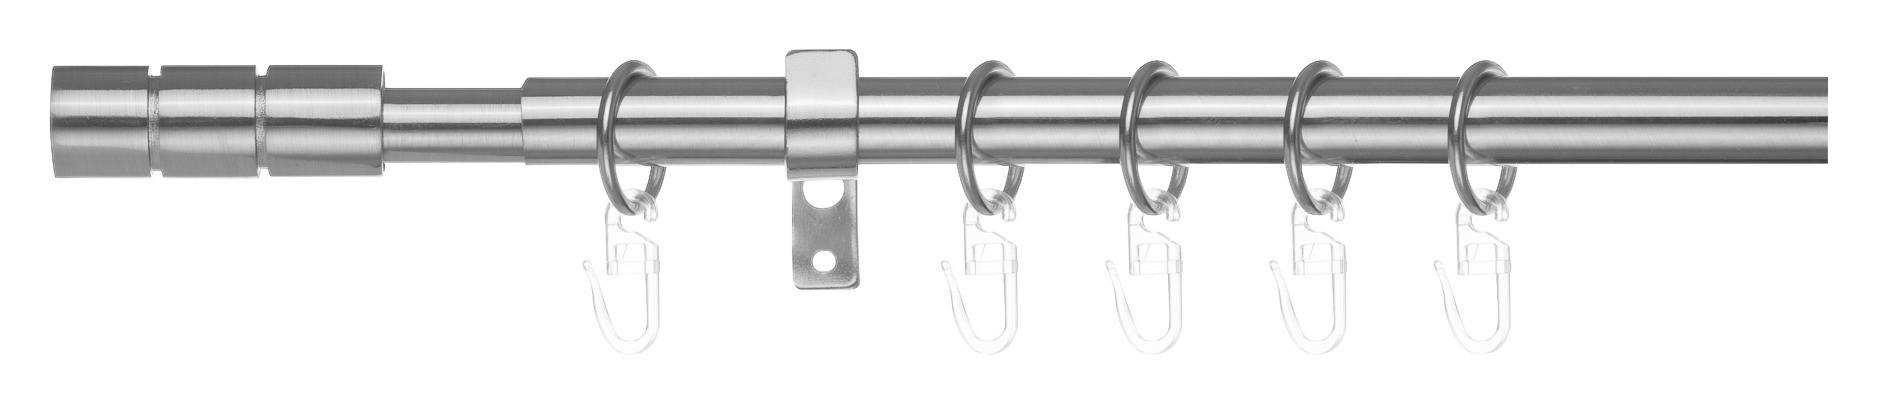 Gardinenstange Zylinder Chrom Metall D: ca. 2 cm ausziehbar von ca. 130 bis 240 cm 1.0 Läufe